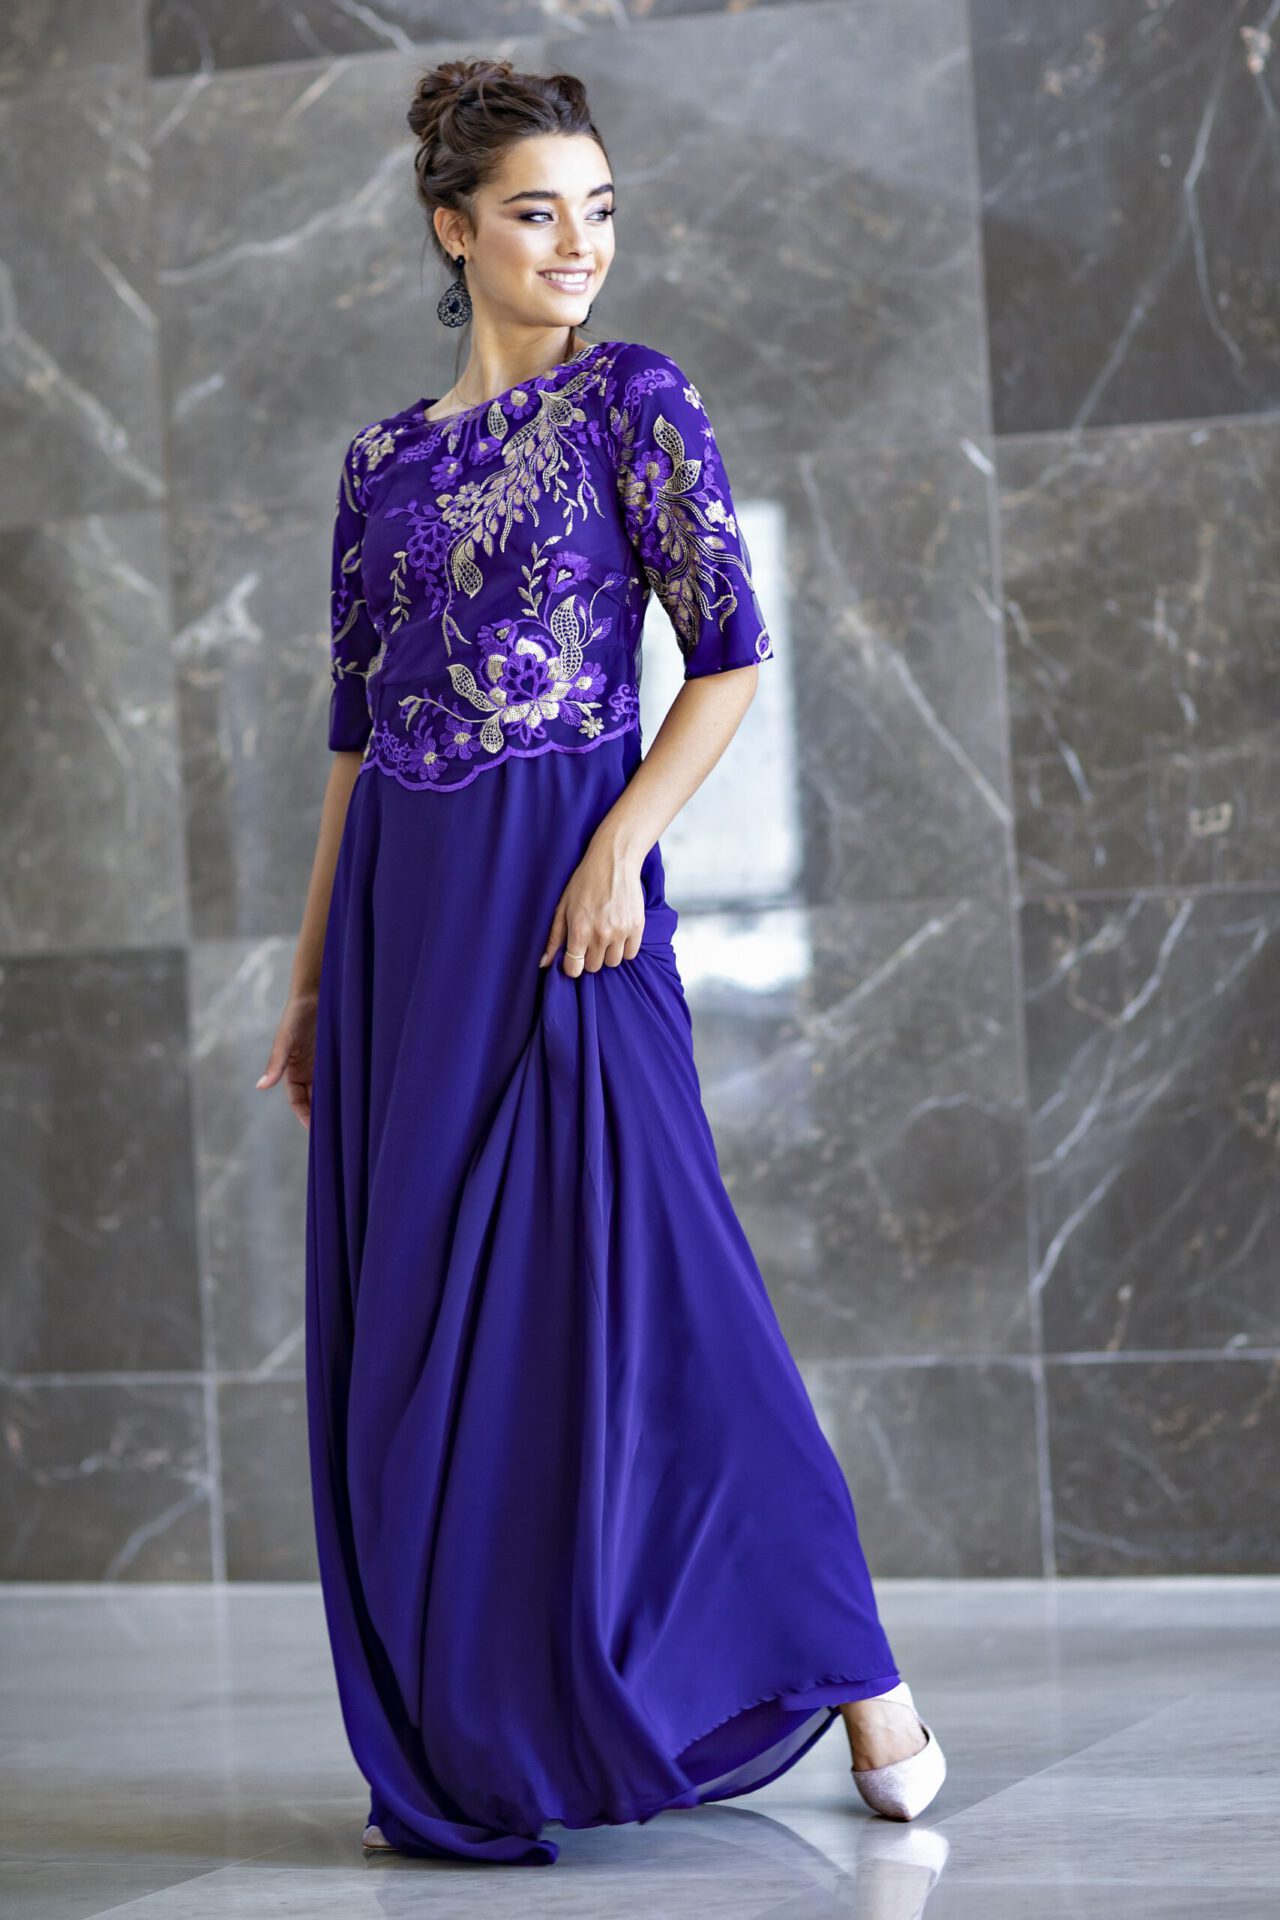 שמלה מעוצבת דגם ביוטי ארין